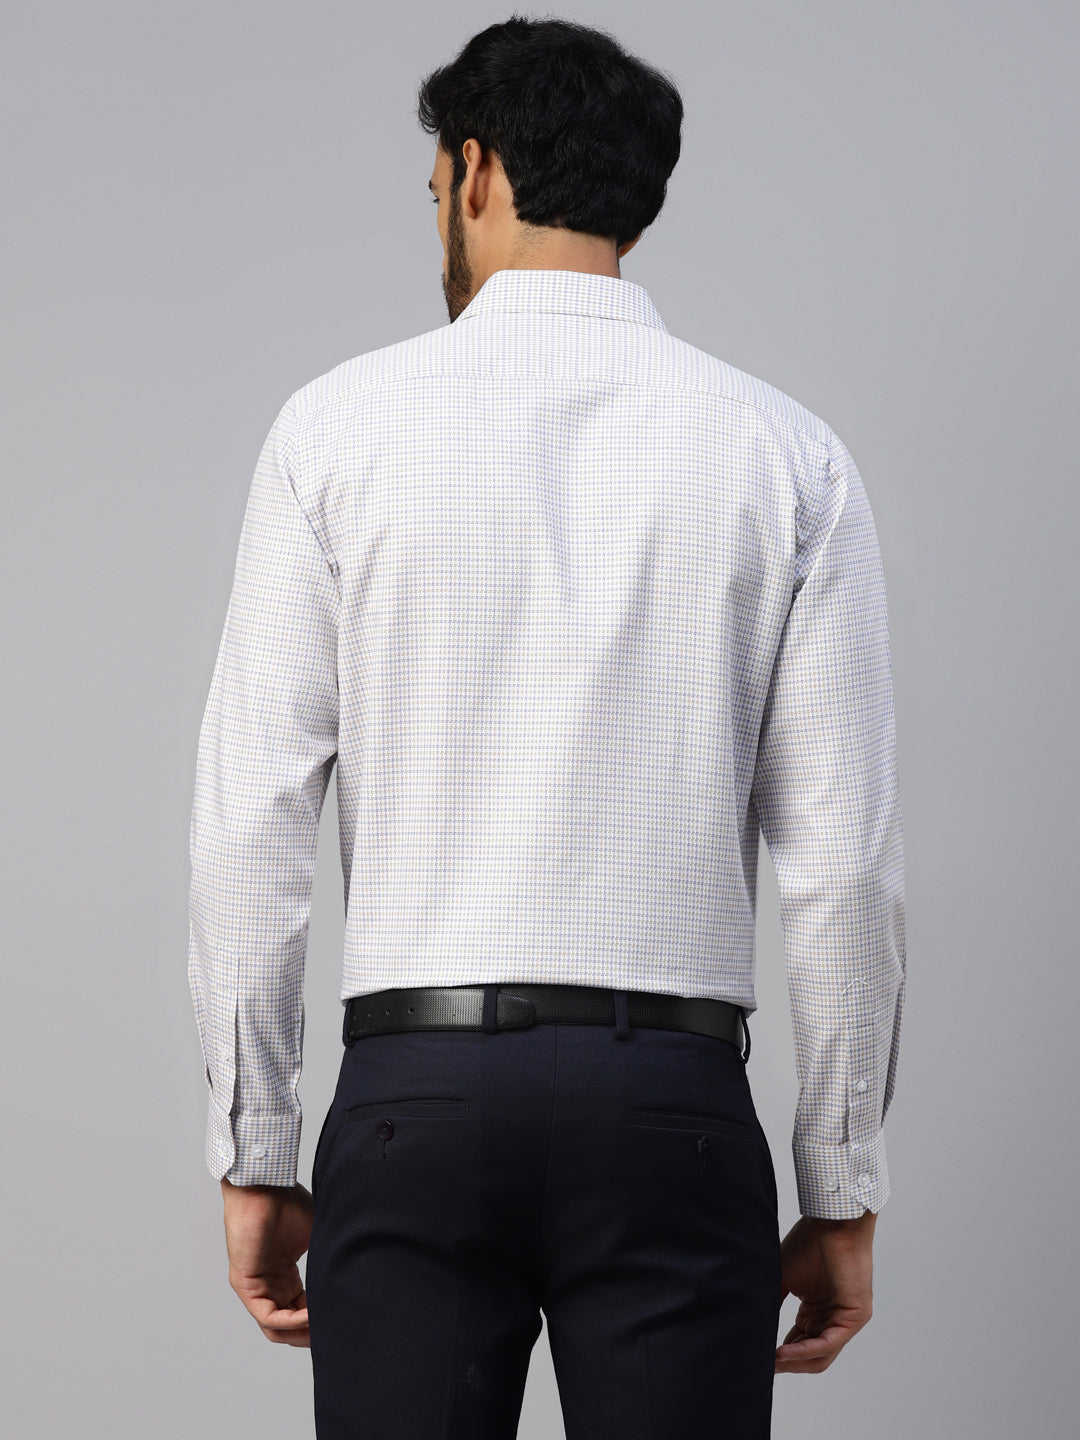 Men's White & Blue Small Checks Slim Fit Shirt